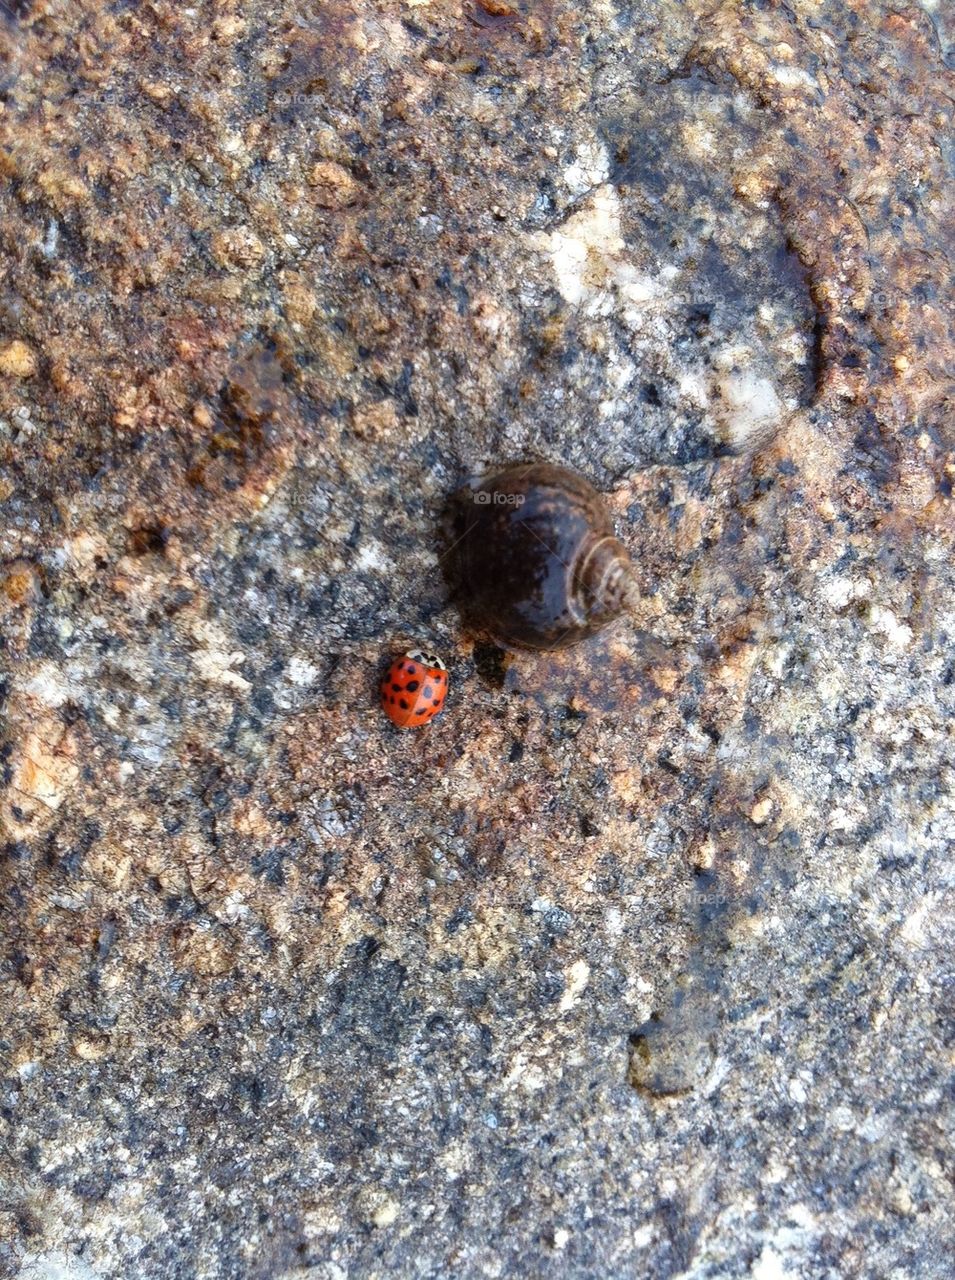 Snail and Ladybug